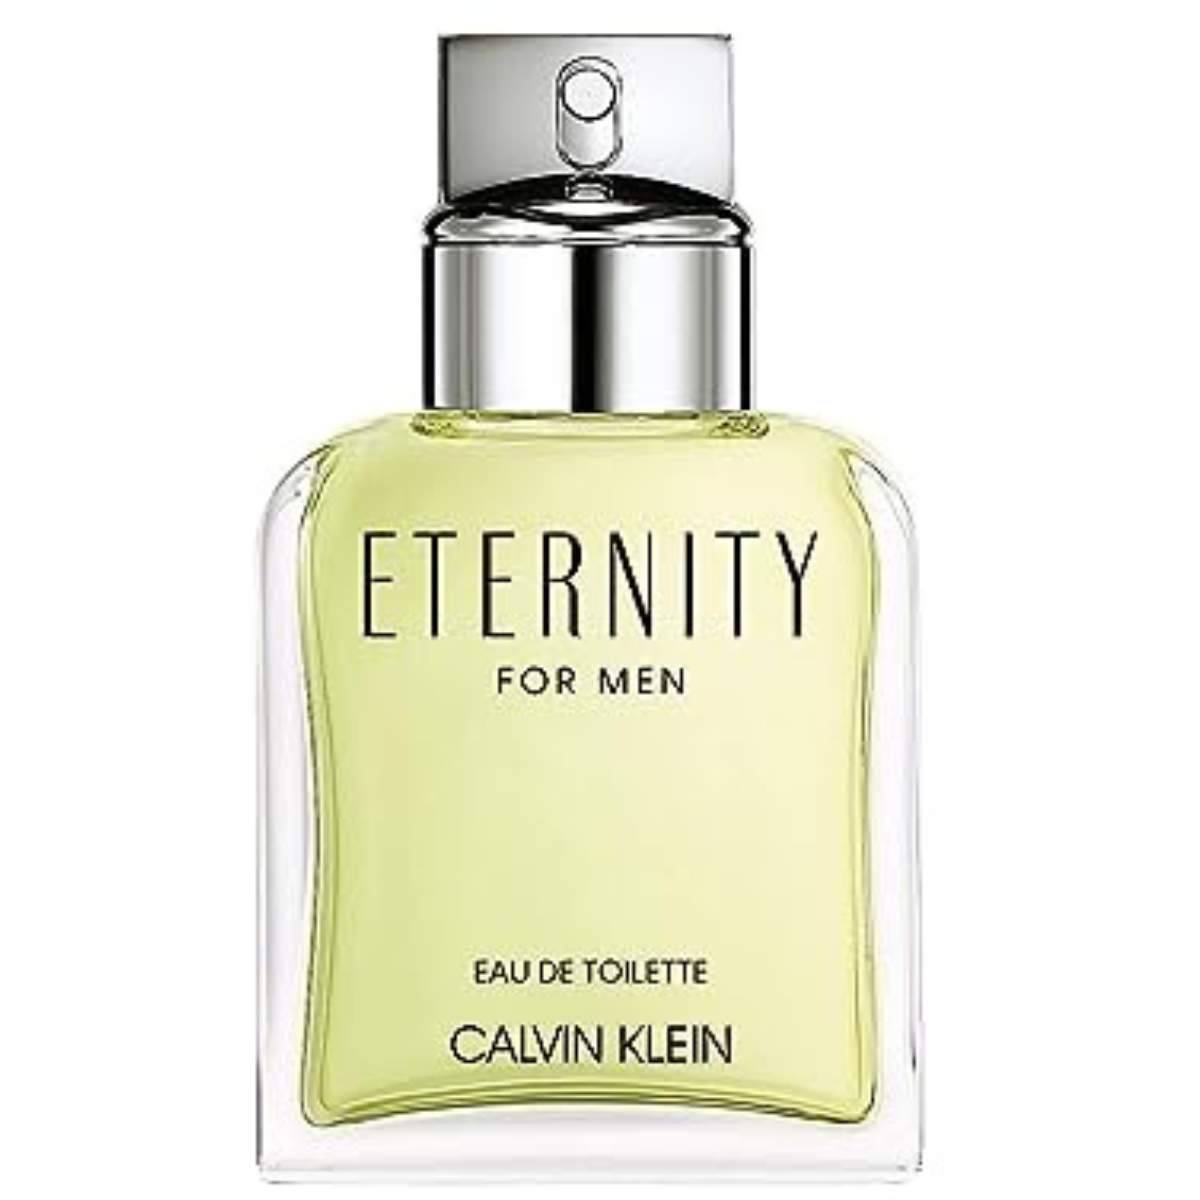 Calvin Klein Eternity 100 Ml For Men Perfume